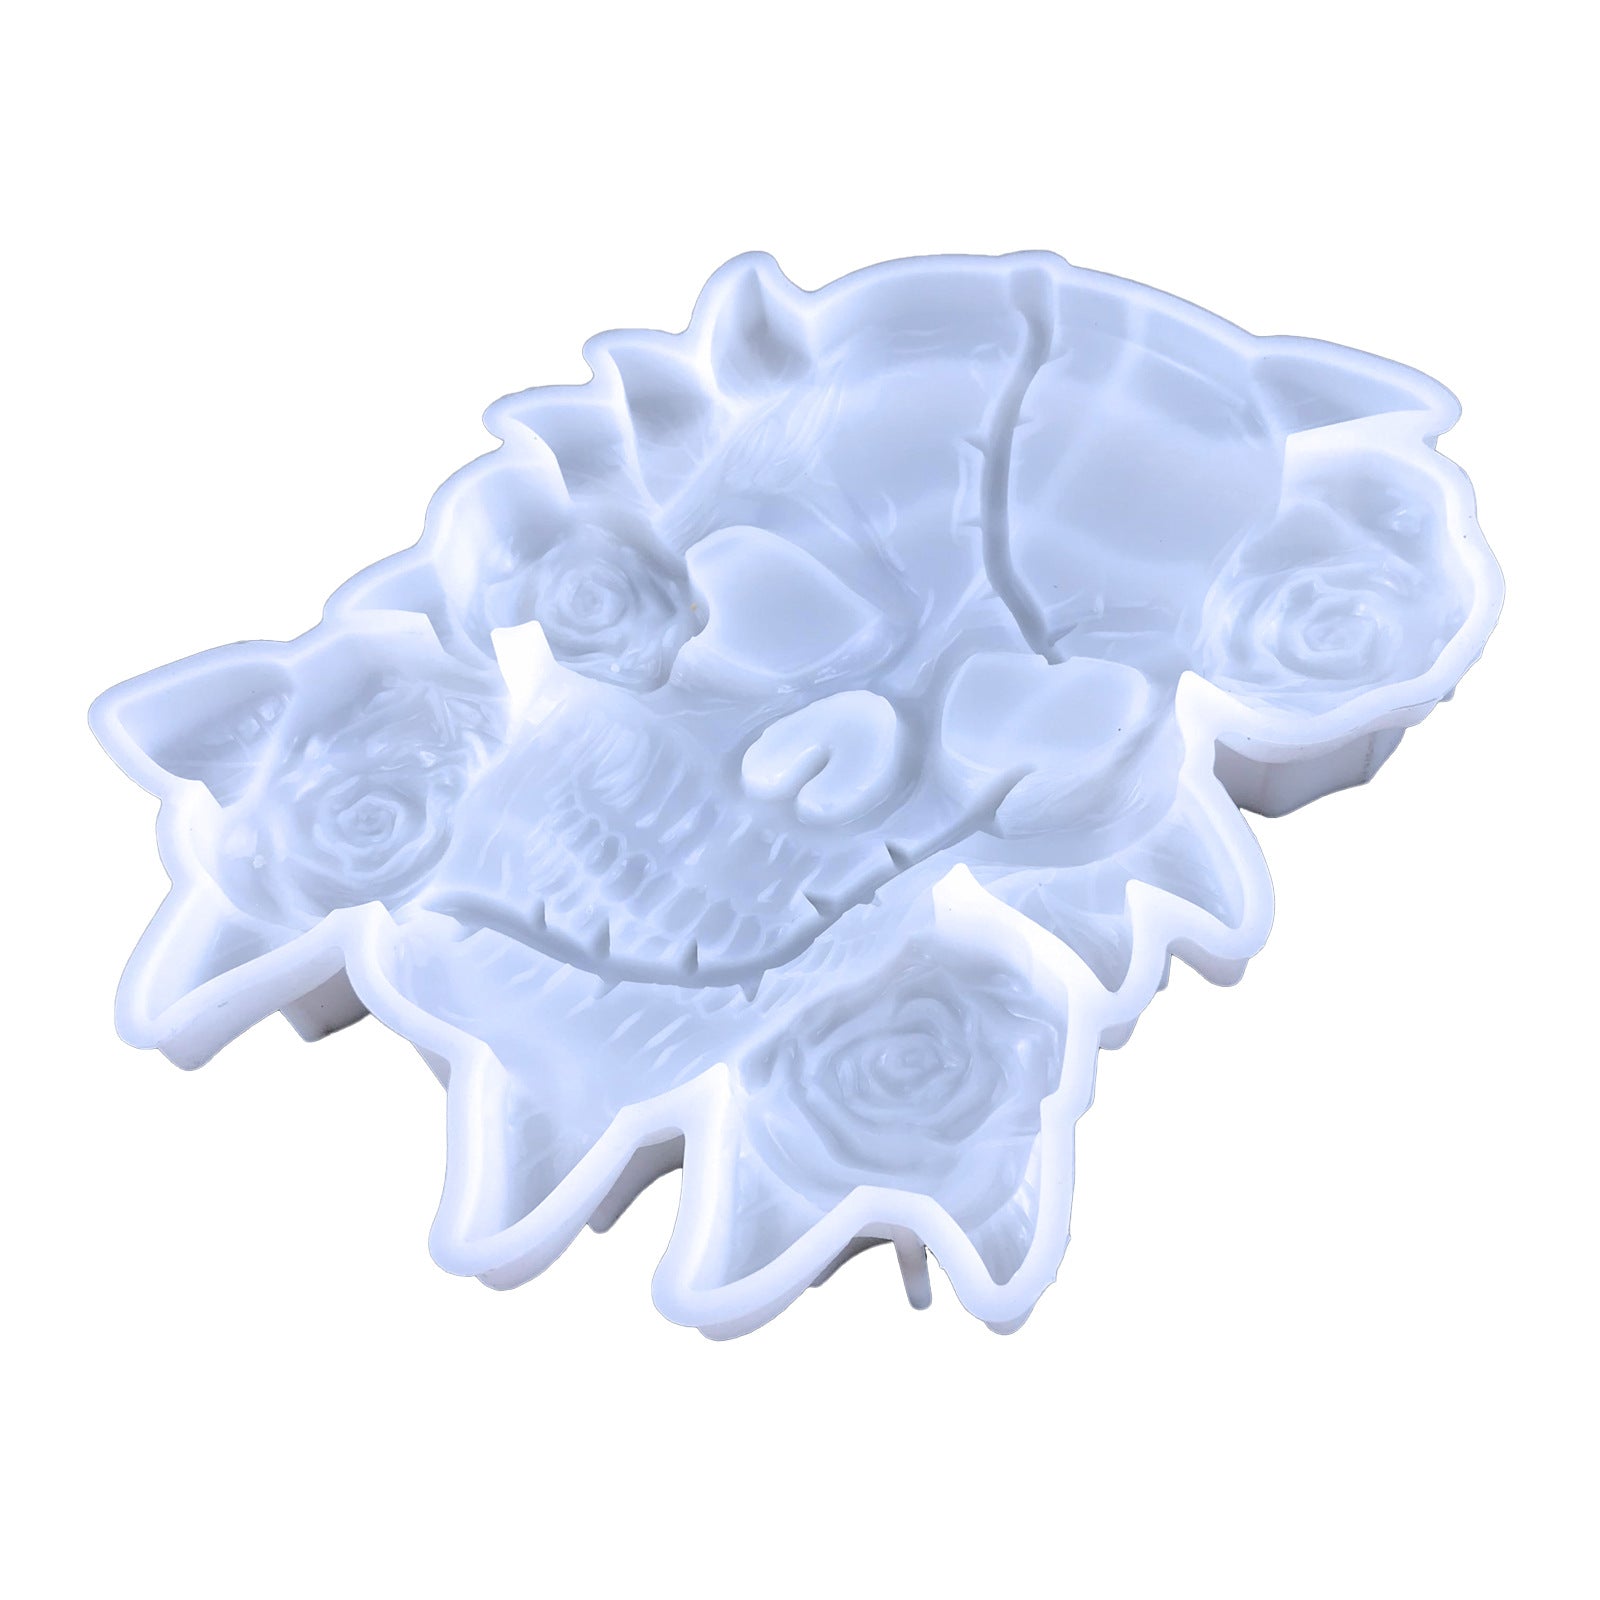 Rose Skull Decoration Resin Mold